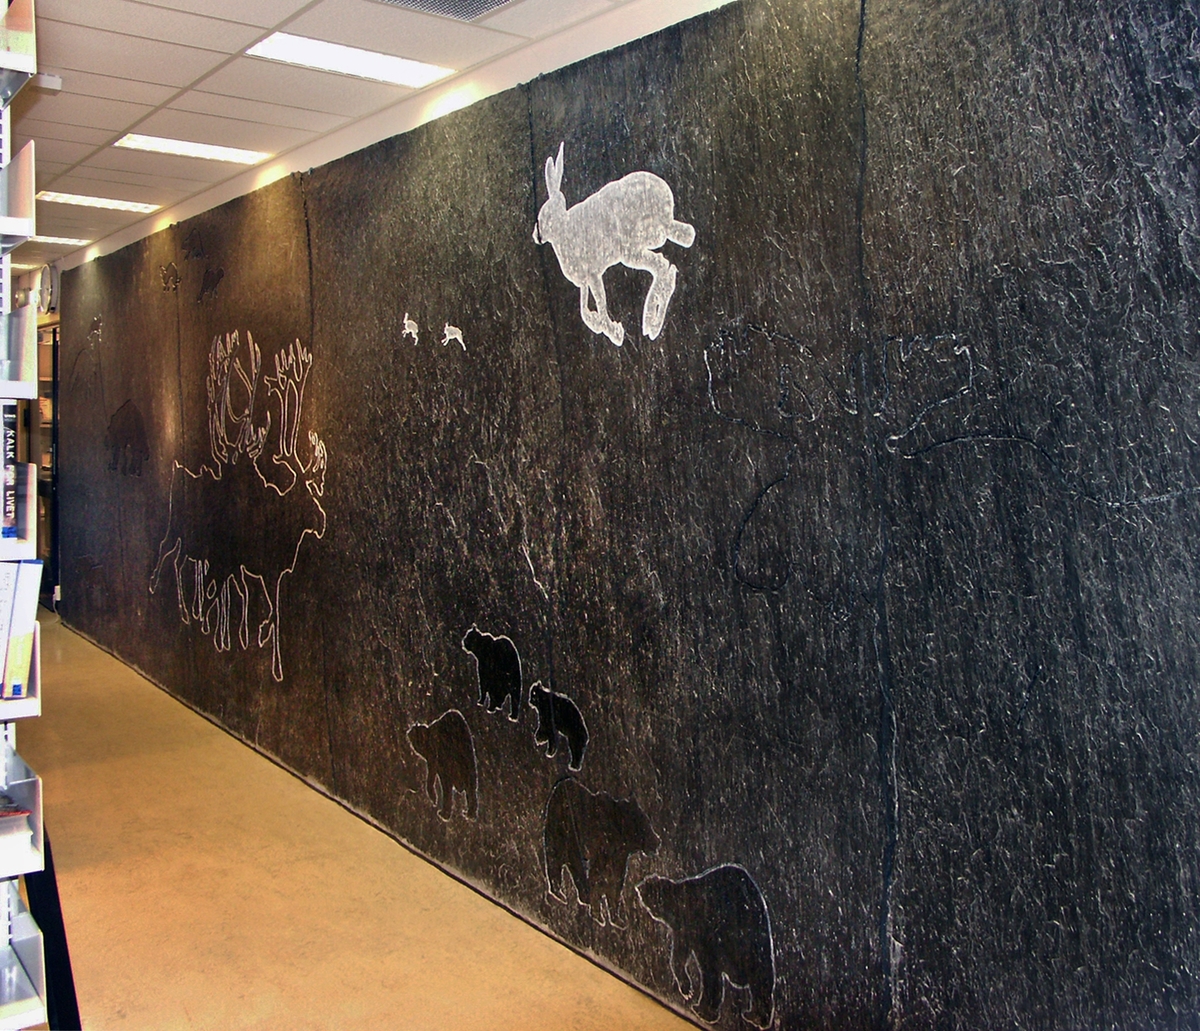 Motivet viser pattedyr fra fjell-og skogfauna i Norge.
De tre veggutsmykningene inne i bygget skal utgjøre en helhet sammen med "Stelene"